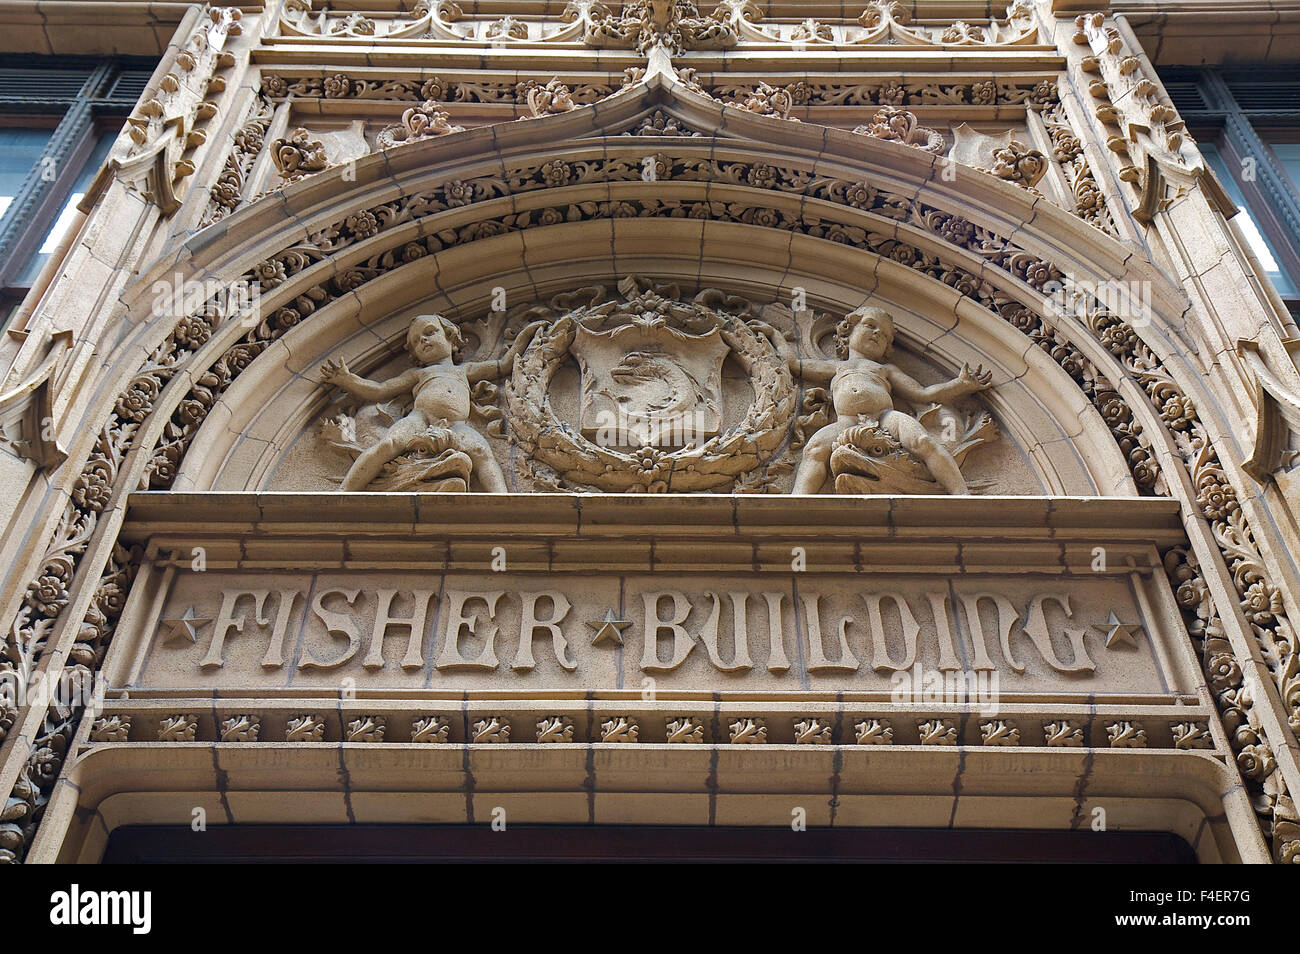 Détail de l'élaboration travail décoratif sur Chicago's Fisher Building, conçu par D.H. Burnham et compagnie et achevé en 1906. Chicago, Illinois, United States. Banque D'Images